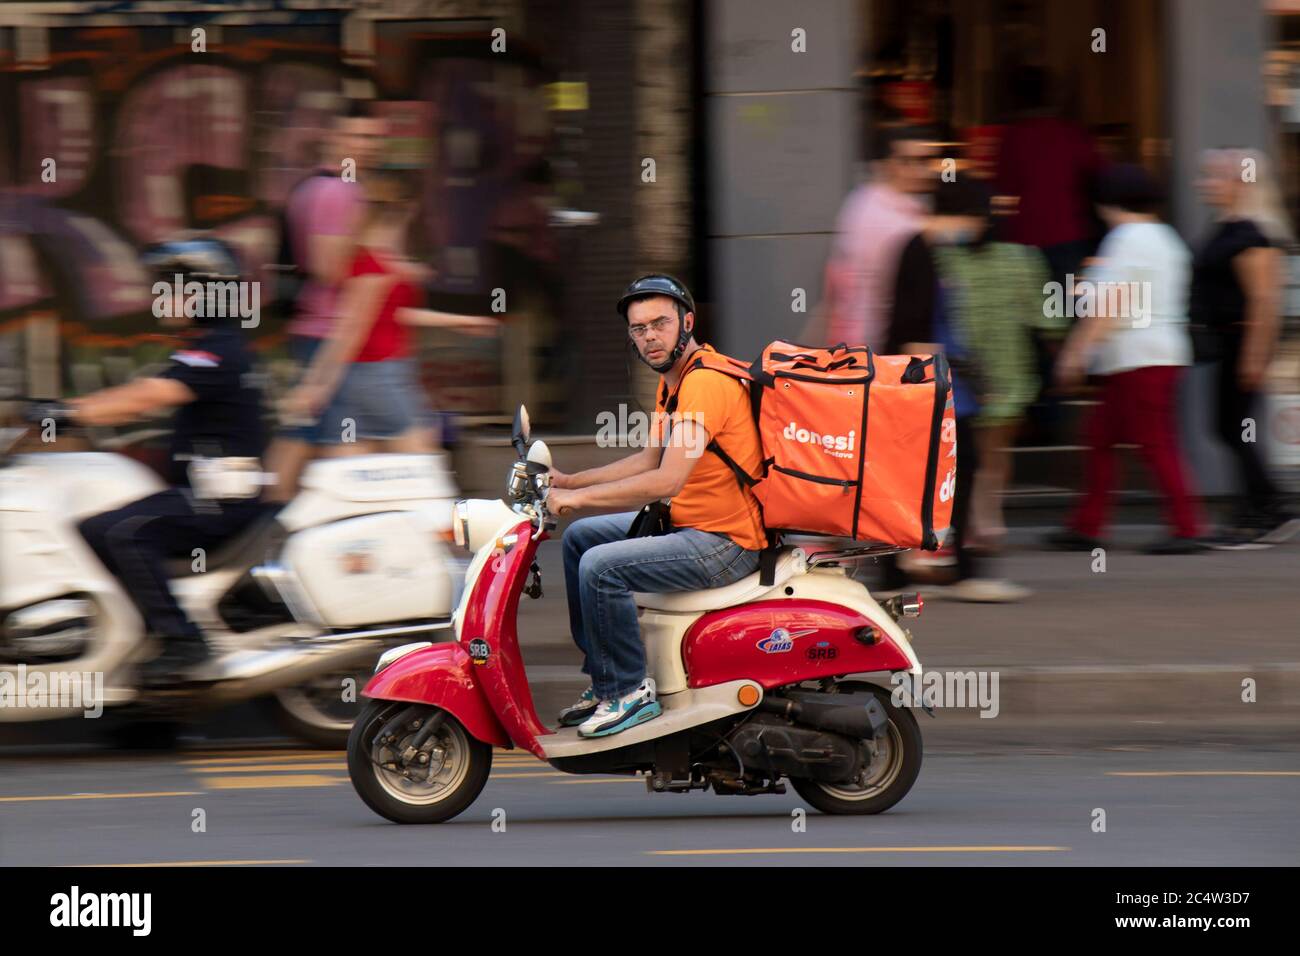 Belgrado, Serbia - 25 de junio de 2020 : Servicio de entrega mensajero montando un dos tonos rojo beige vespa scooter vintage en el tráfico urbano, barrido Foto de stock